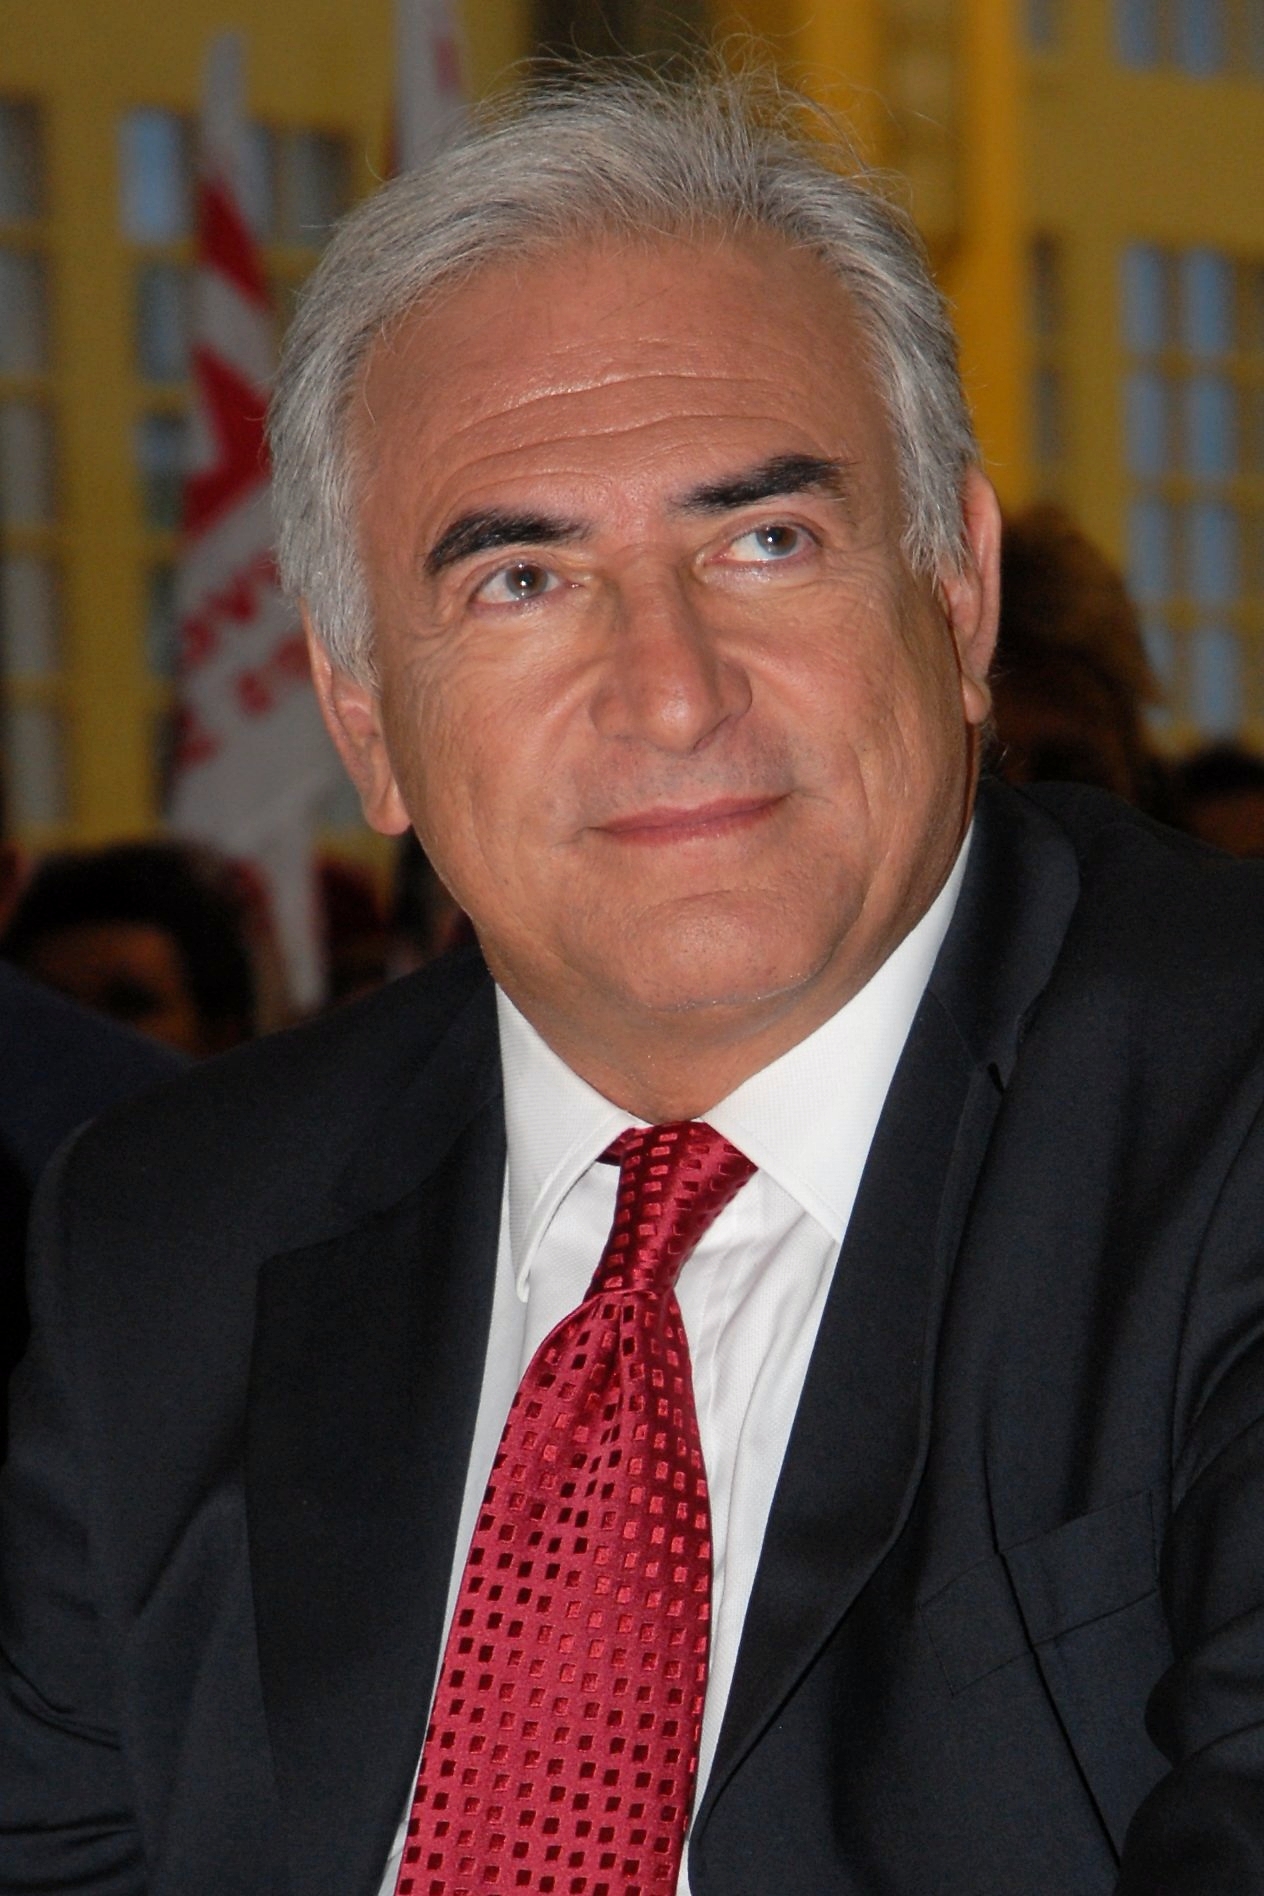 Strauss-Kahn. Photo: Wikimedia